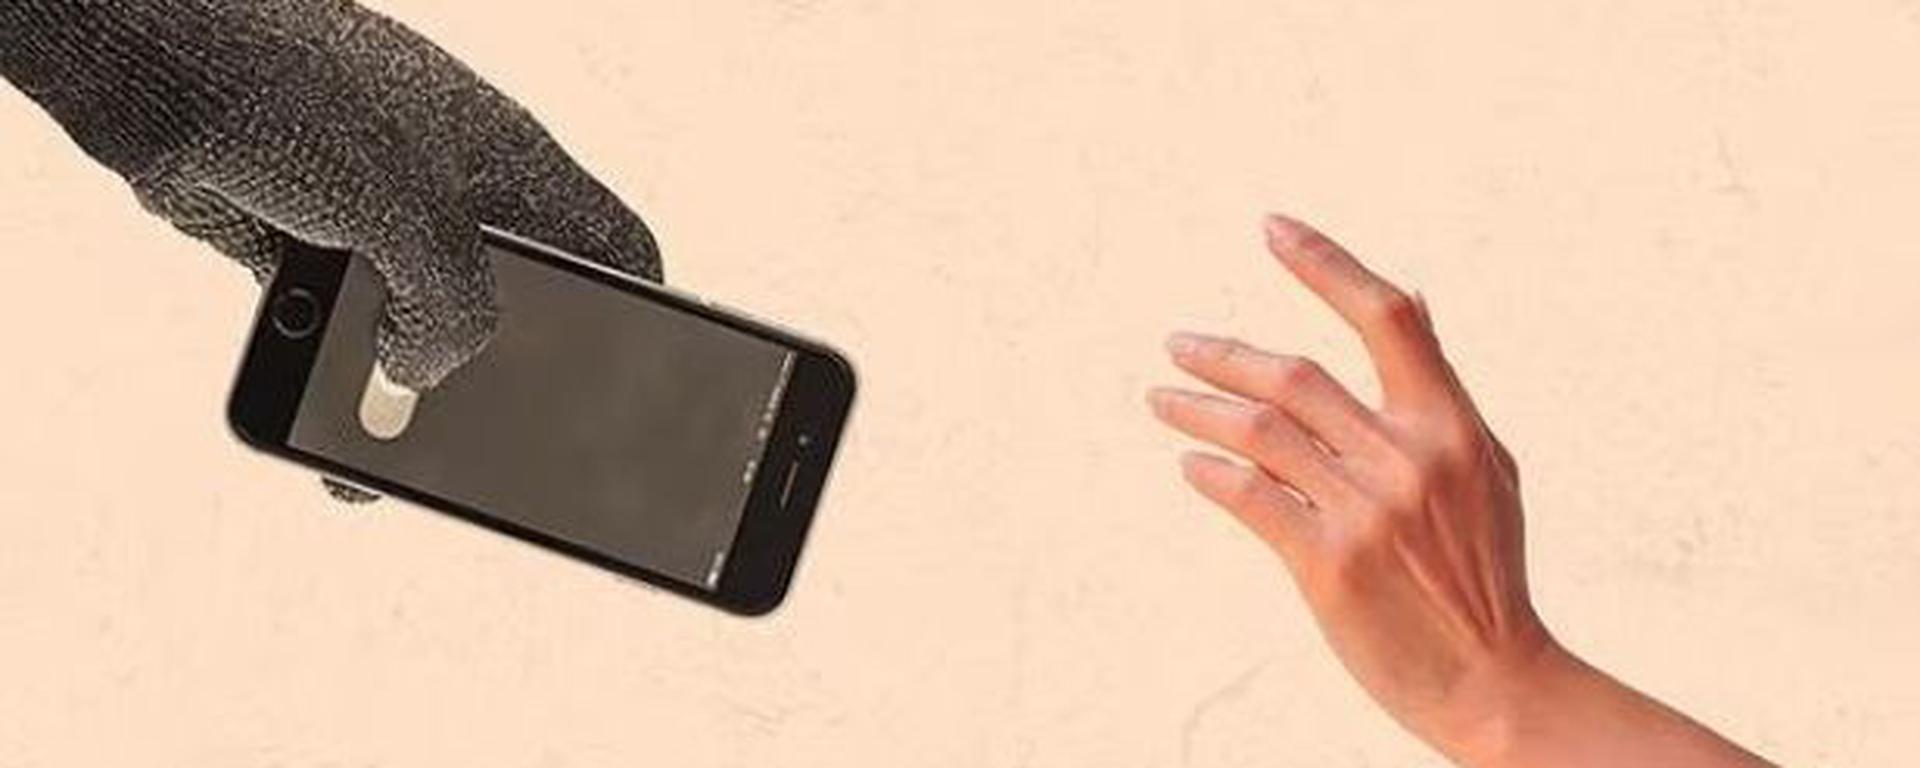 Hasta 30 años por robo de celulares: qué implican las nuevas medidas penales, reacciones y cifras de este delito en el país